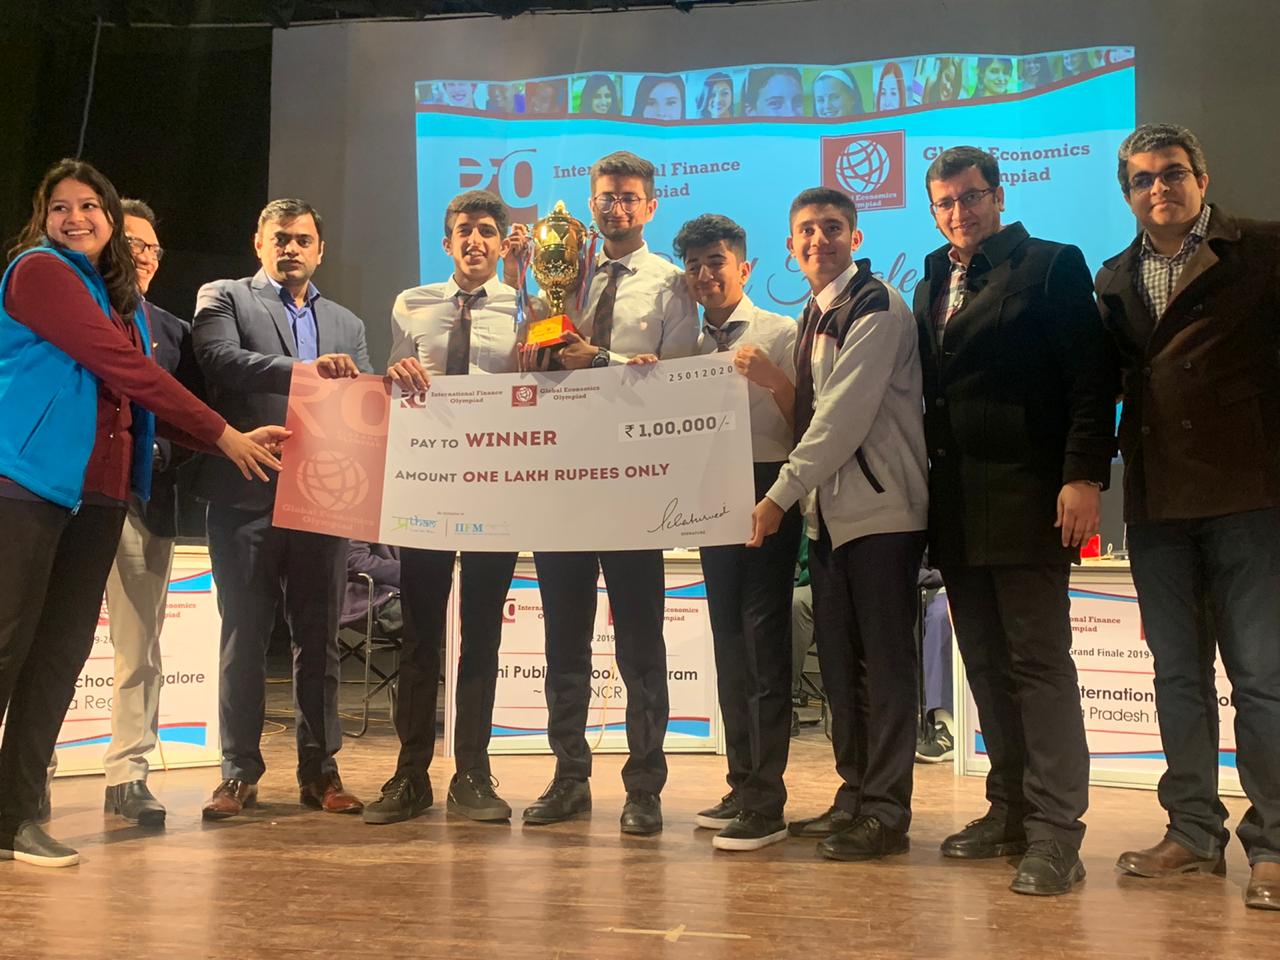 7वें अंतर्राष्ट्रीय वित्तीय ओलंपियाड में कर्नाटका टीम ने लहराया जीत का परचम